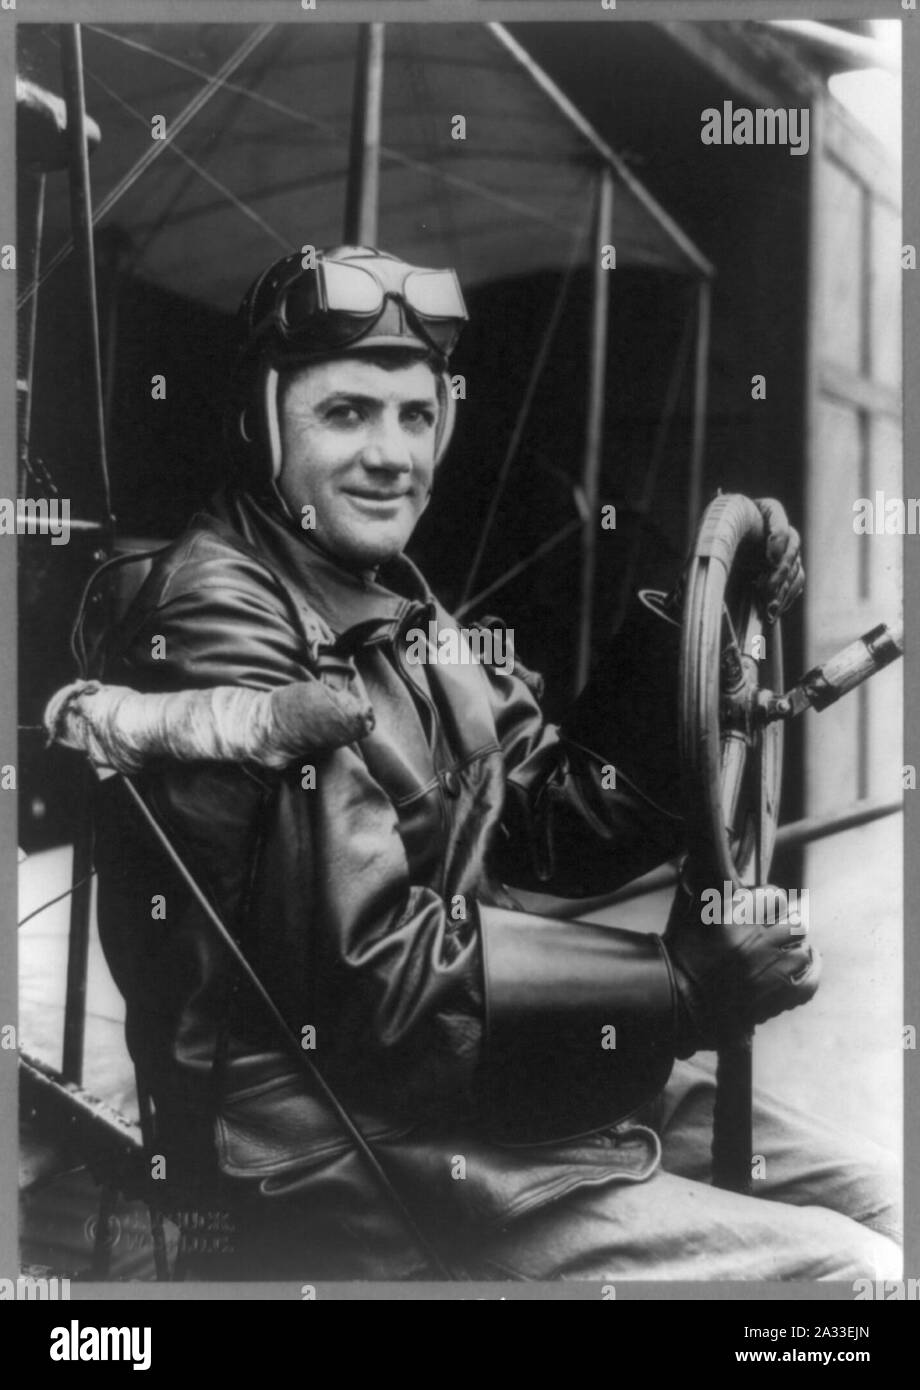 F.B. Hennessy, Army aviator, drei-viertel länge Porträt, am Lenkrad des Flugzeugs sitzt, nach rechts, in der Kleidung Aviator's Stockfoto